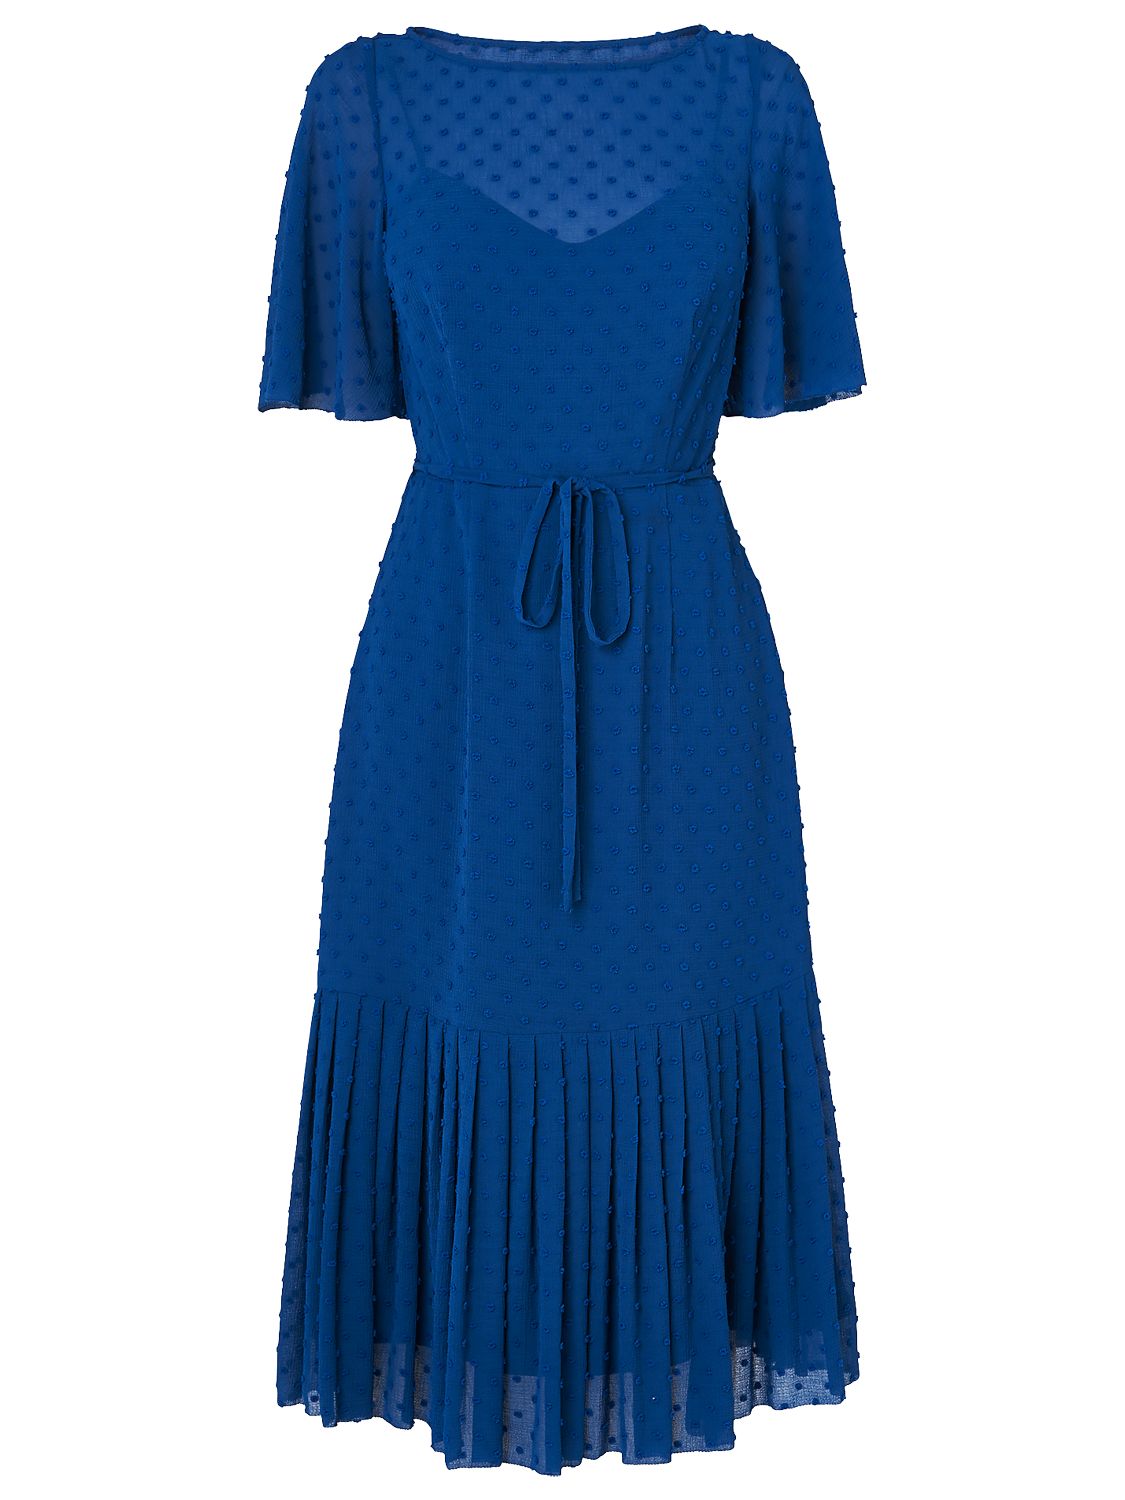 L.K.Bennett Boe Spot Dress, Hockney Blue at John Lewis & Partners